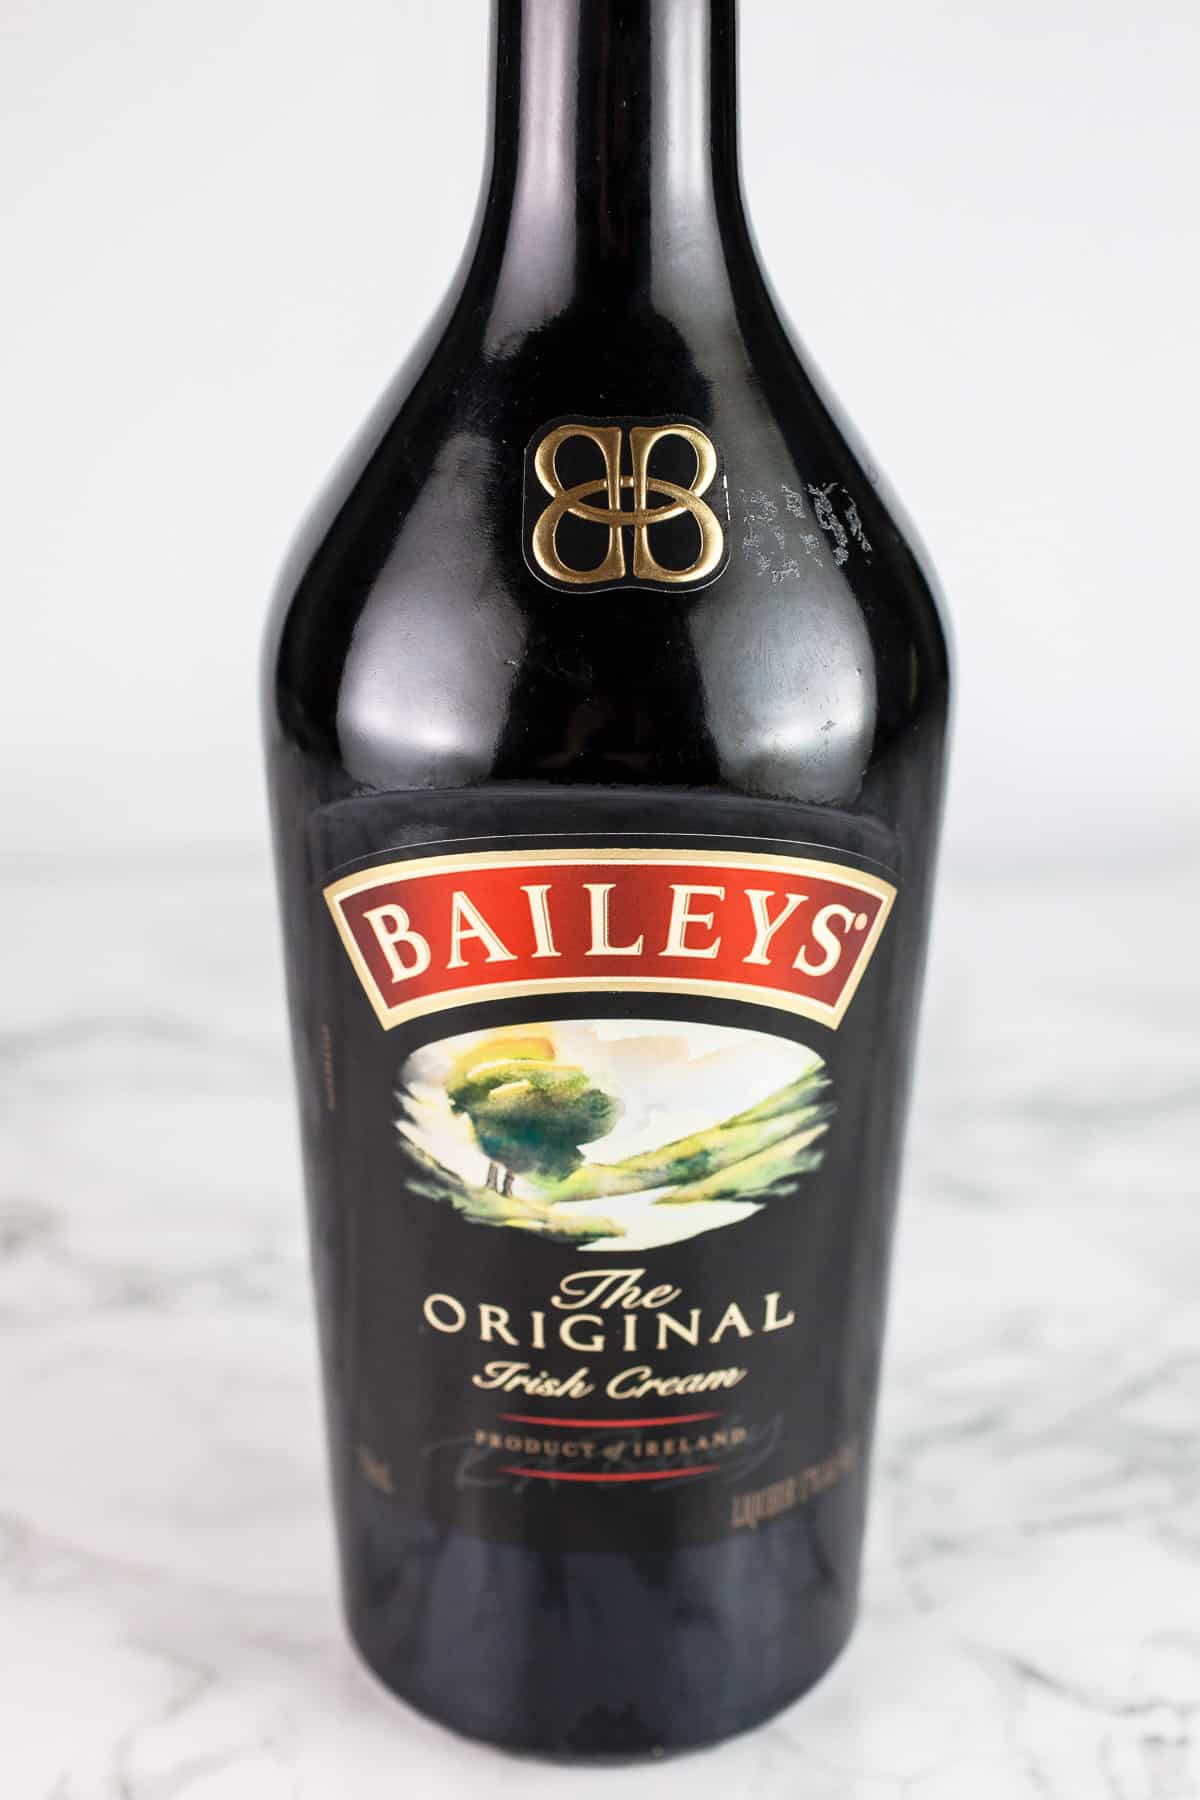 Bottle of Baileys Irish Cream on white surface.